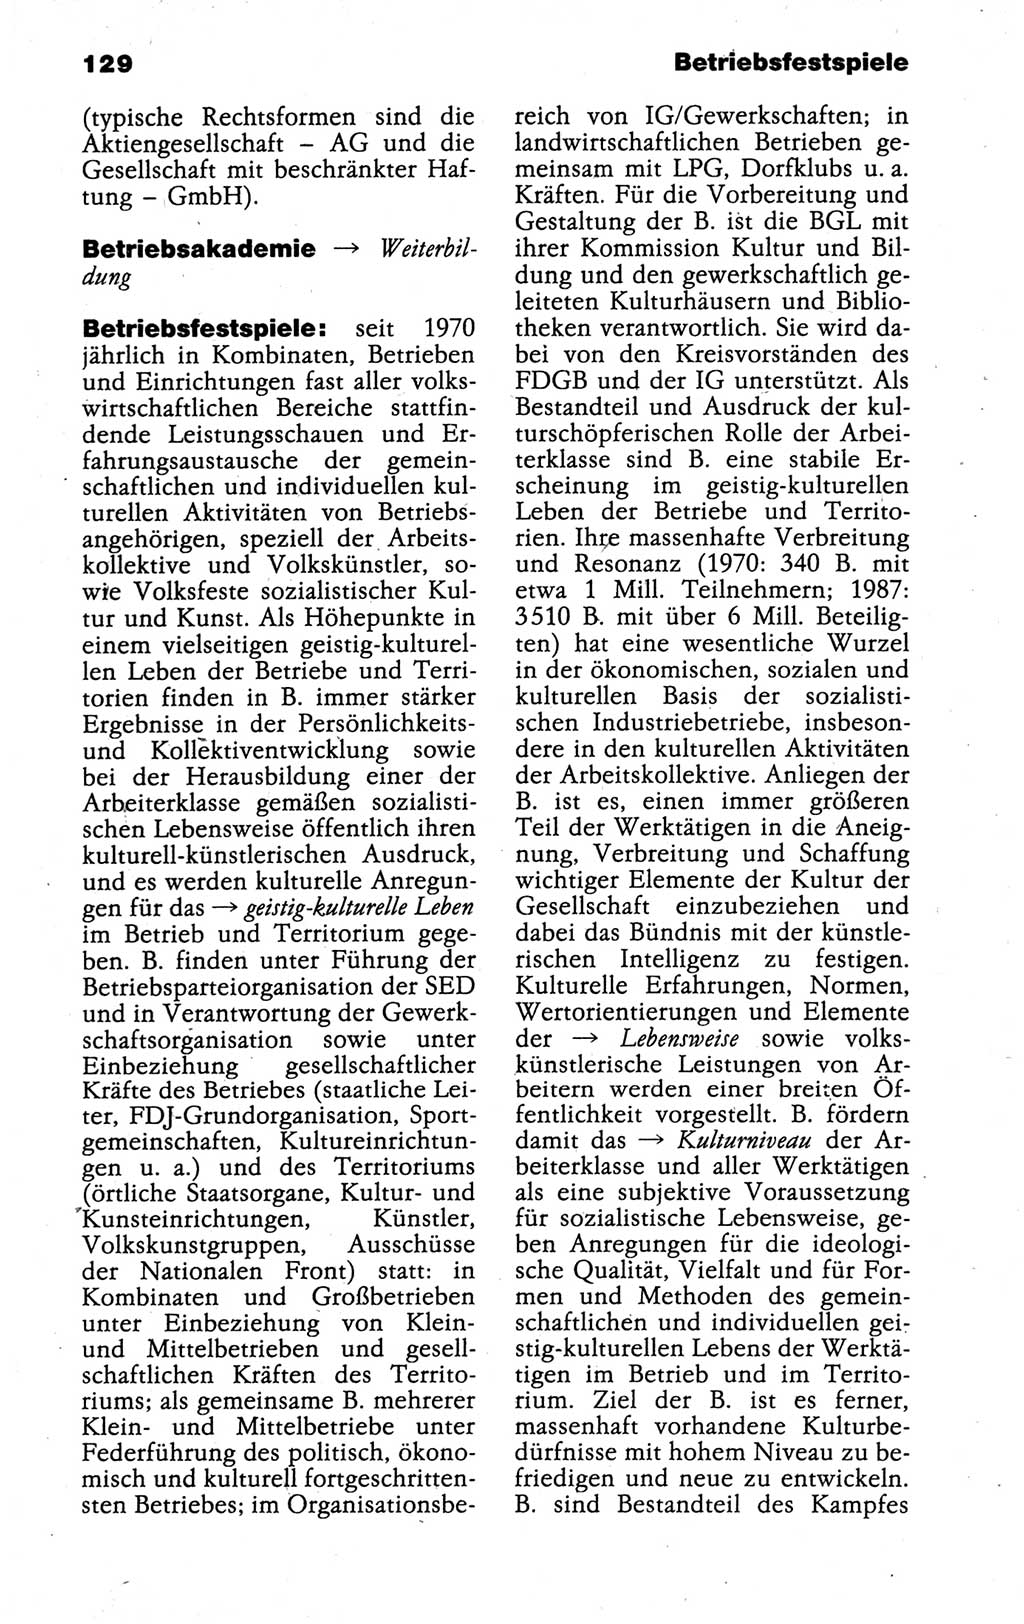 Kleines politisches Wörterbuch [Deutsche Demokratische Republik (DDR)] 1988, Seite 129 (Kl. pol. Wb. DDR 1988, S. 129)